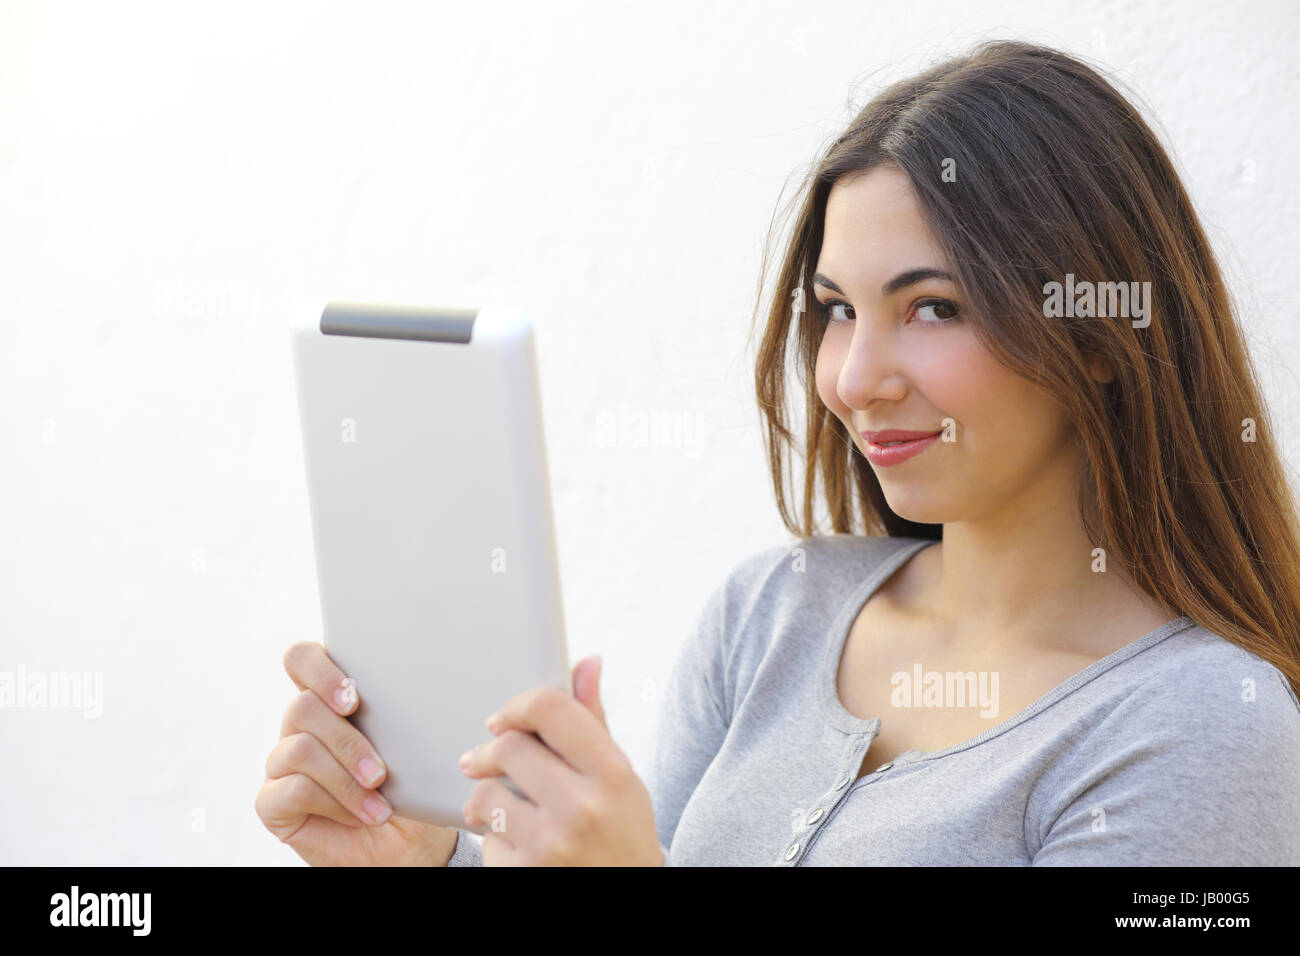 Pretty Woman tenendo un tablet e guardando la telecamera su un muro bianco Foto Stock